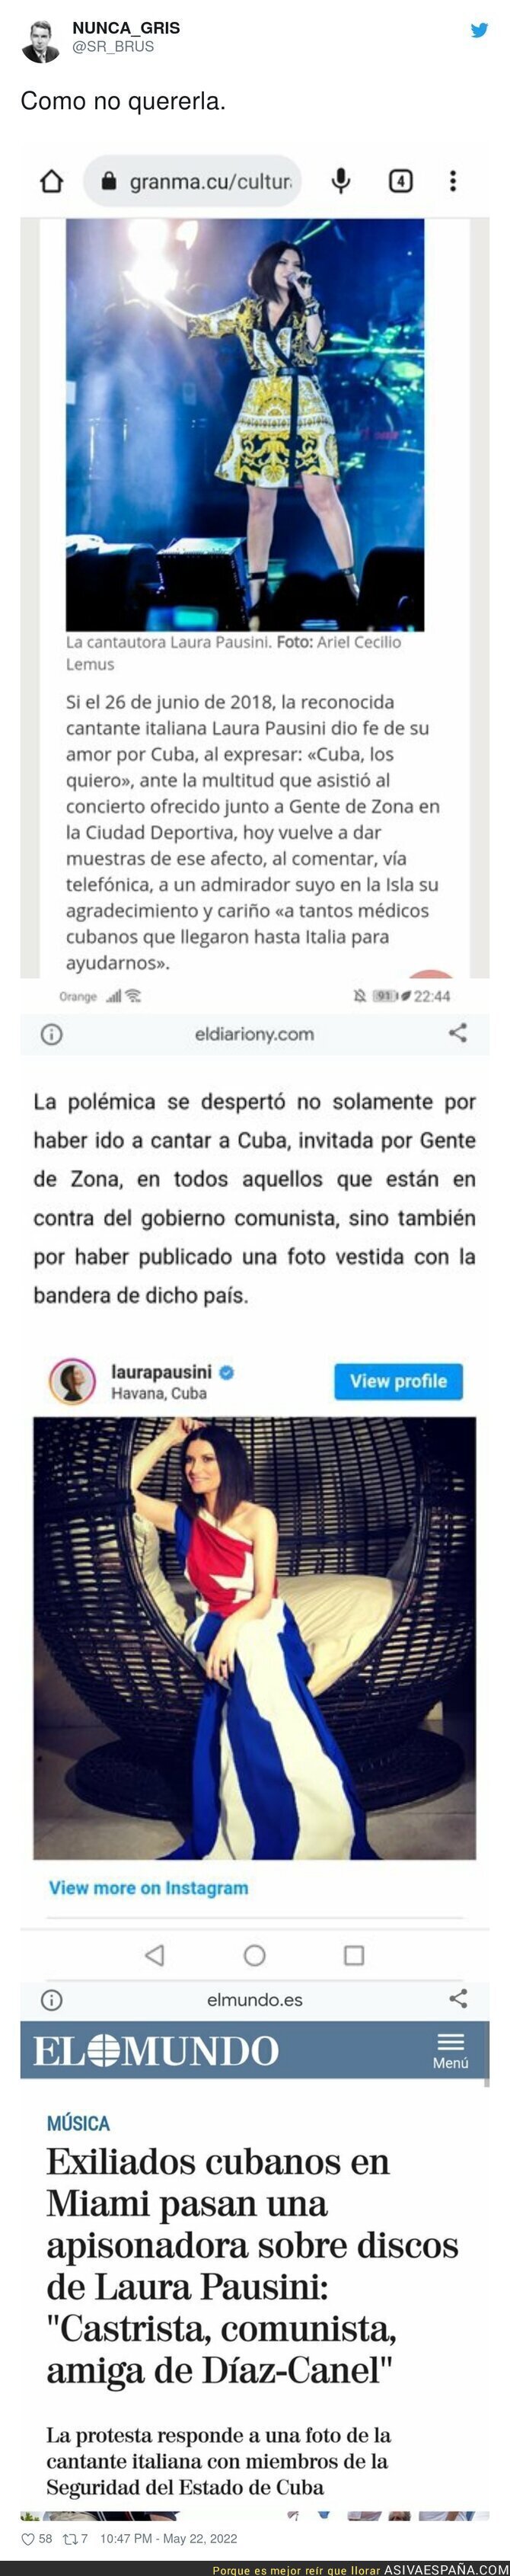 Laura Pausini se gana el aplauso de la izquierda tras estas acciones